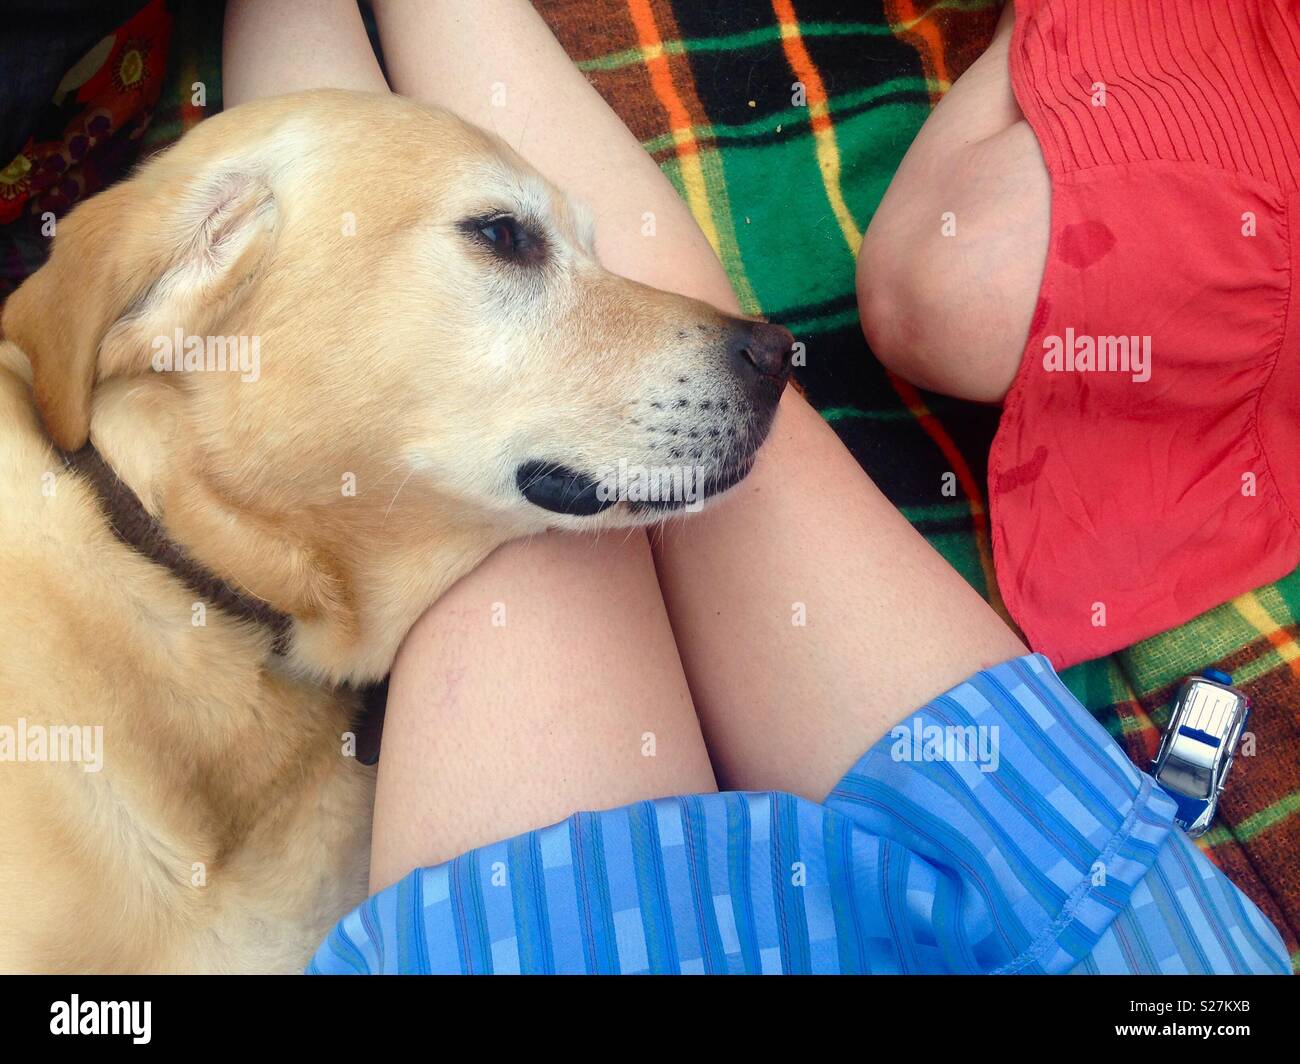 Golden Labrador Retriever liegen auf weiblichen Besitzer Beine bei einem Picknick auf einer Picknickdecke mit Beinen und einer anderen Frau ein Kind matchbox Auto Stockfoto